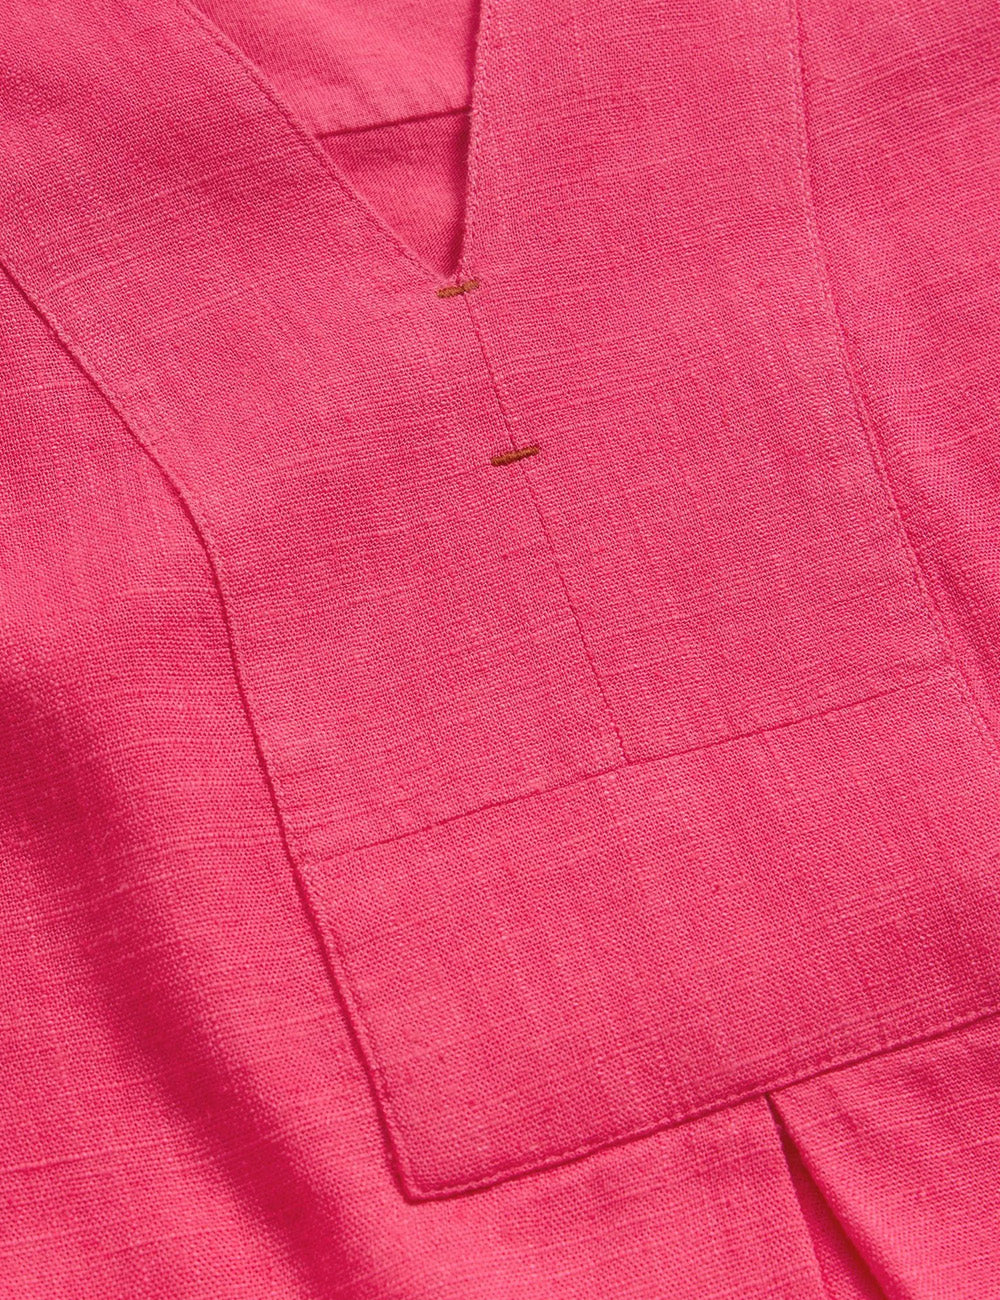 White Stuff Celia Jersey Mix Shirt - Mid Pink